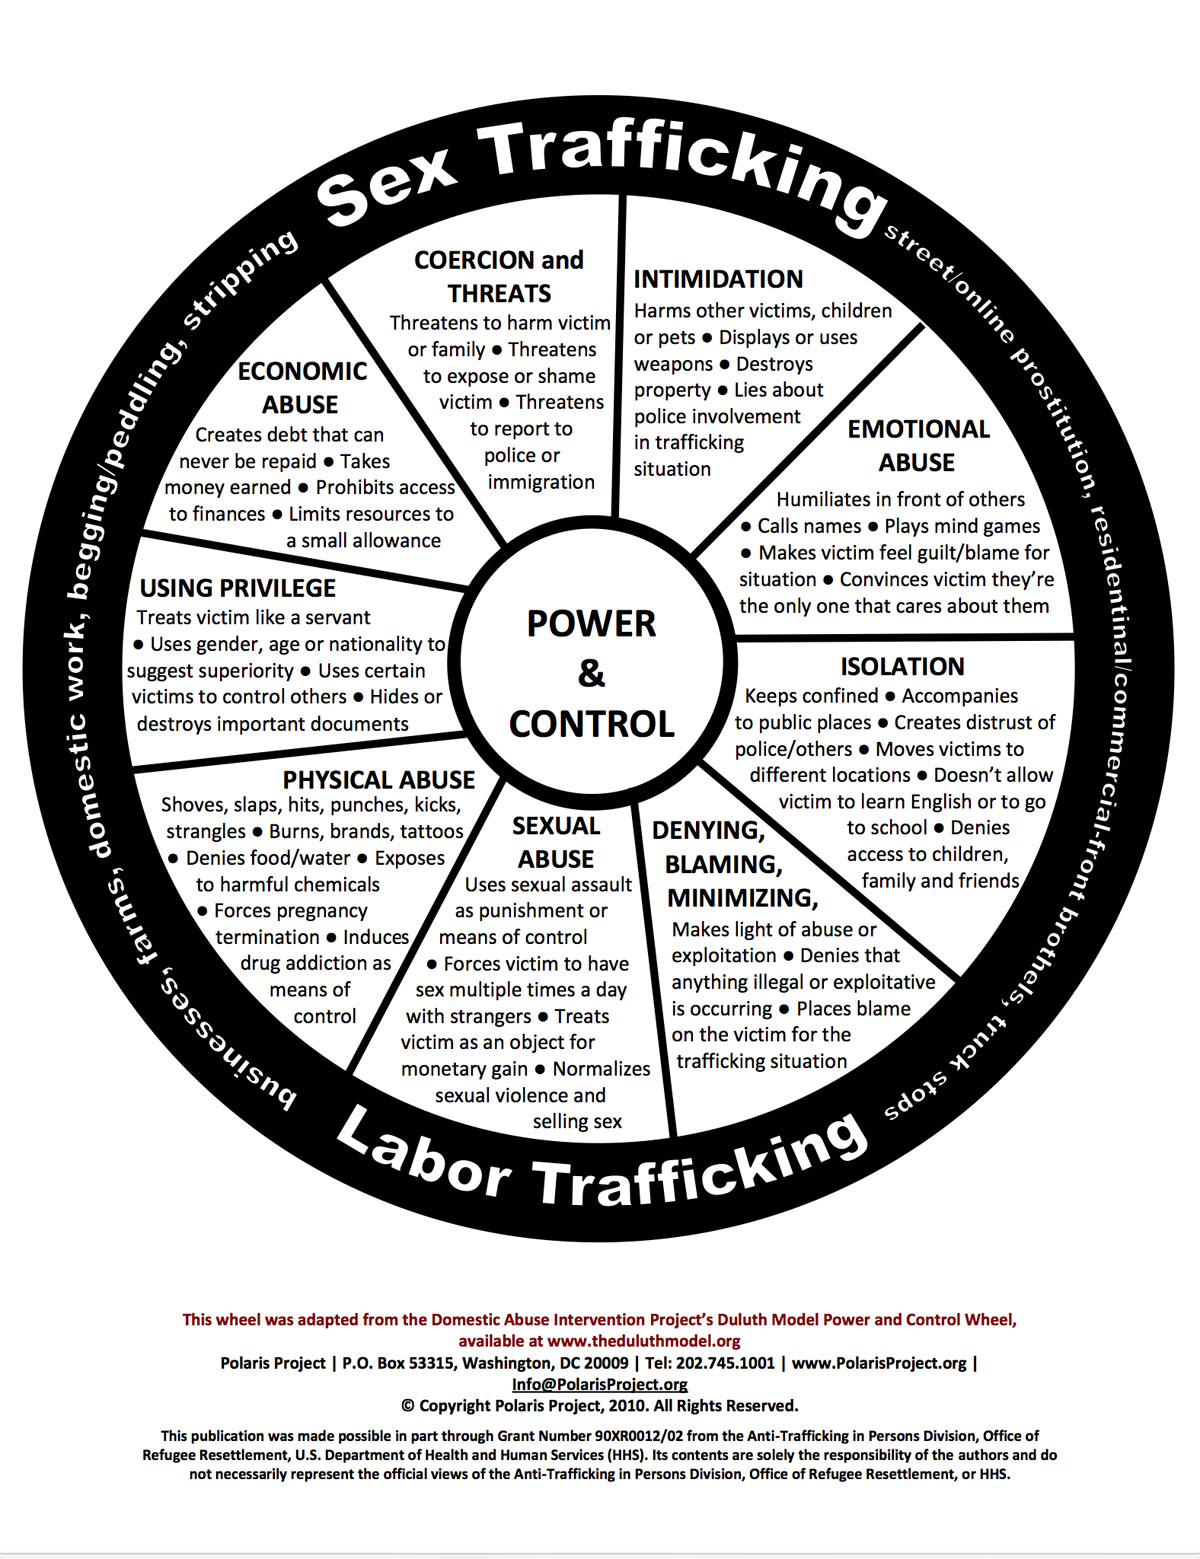 Human Trafficking Power & Control Wheel